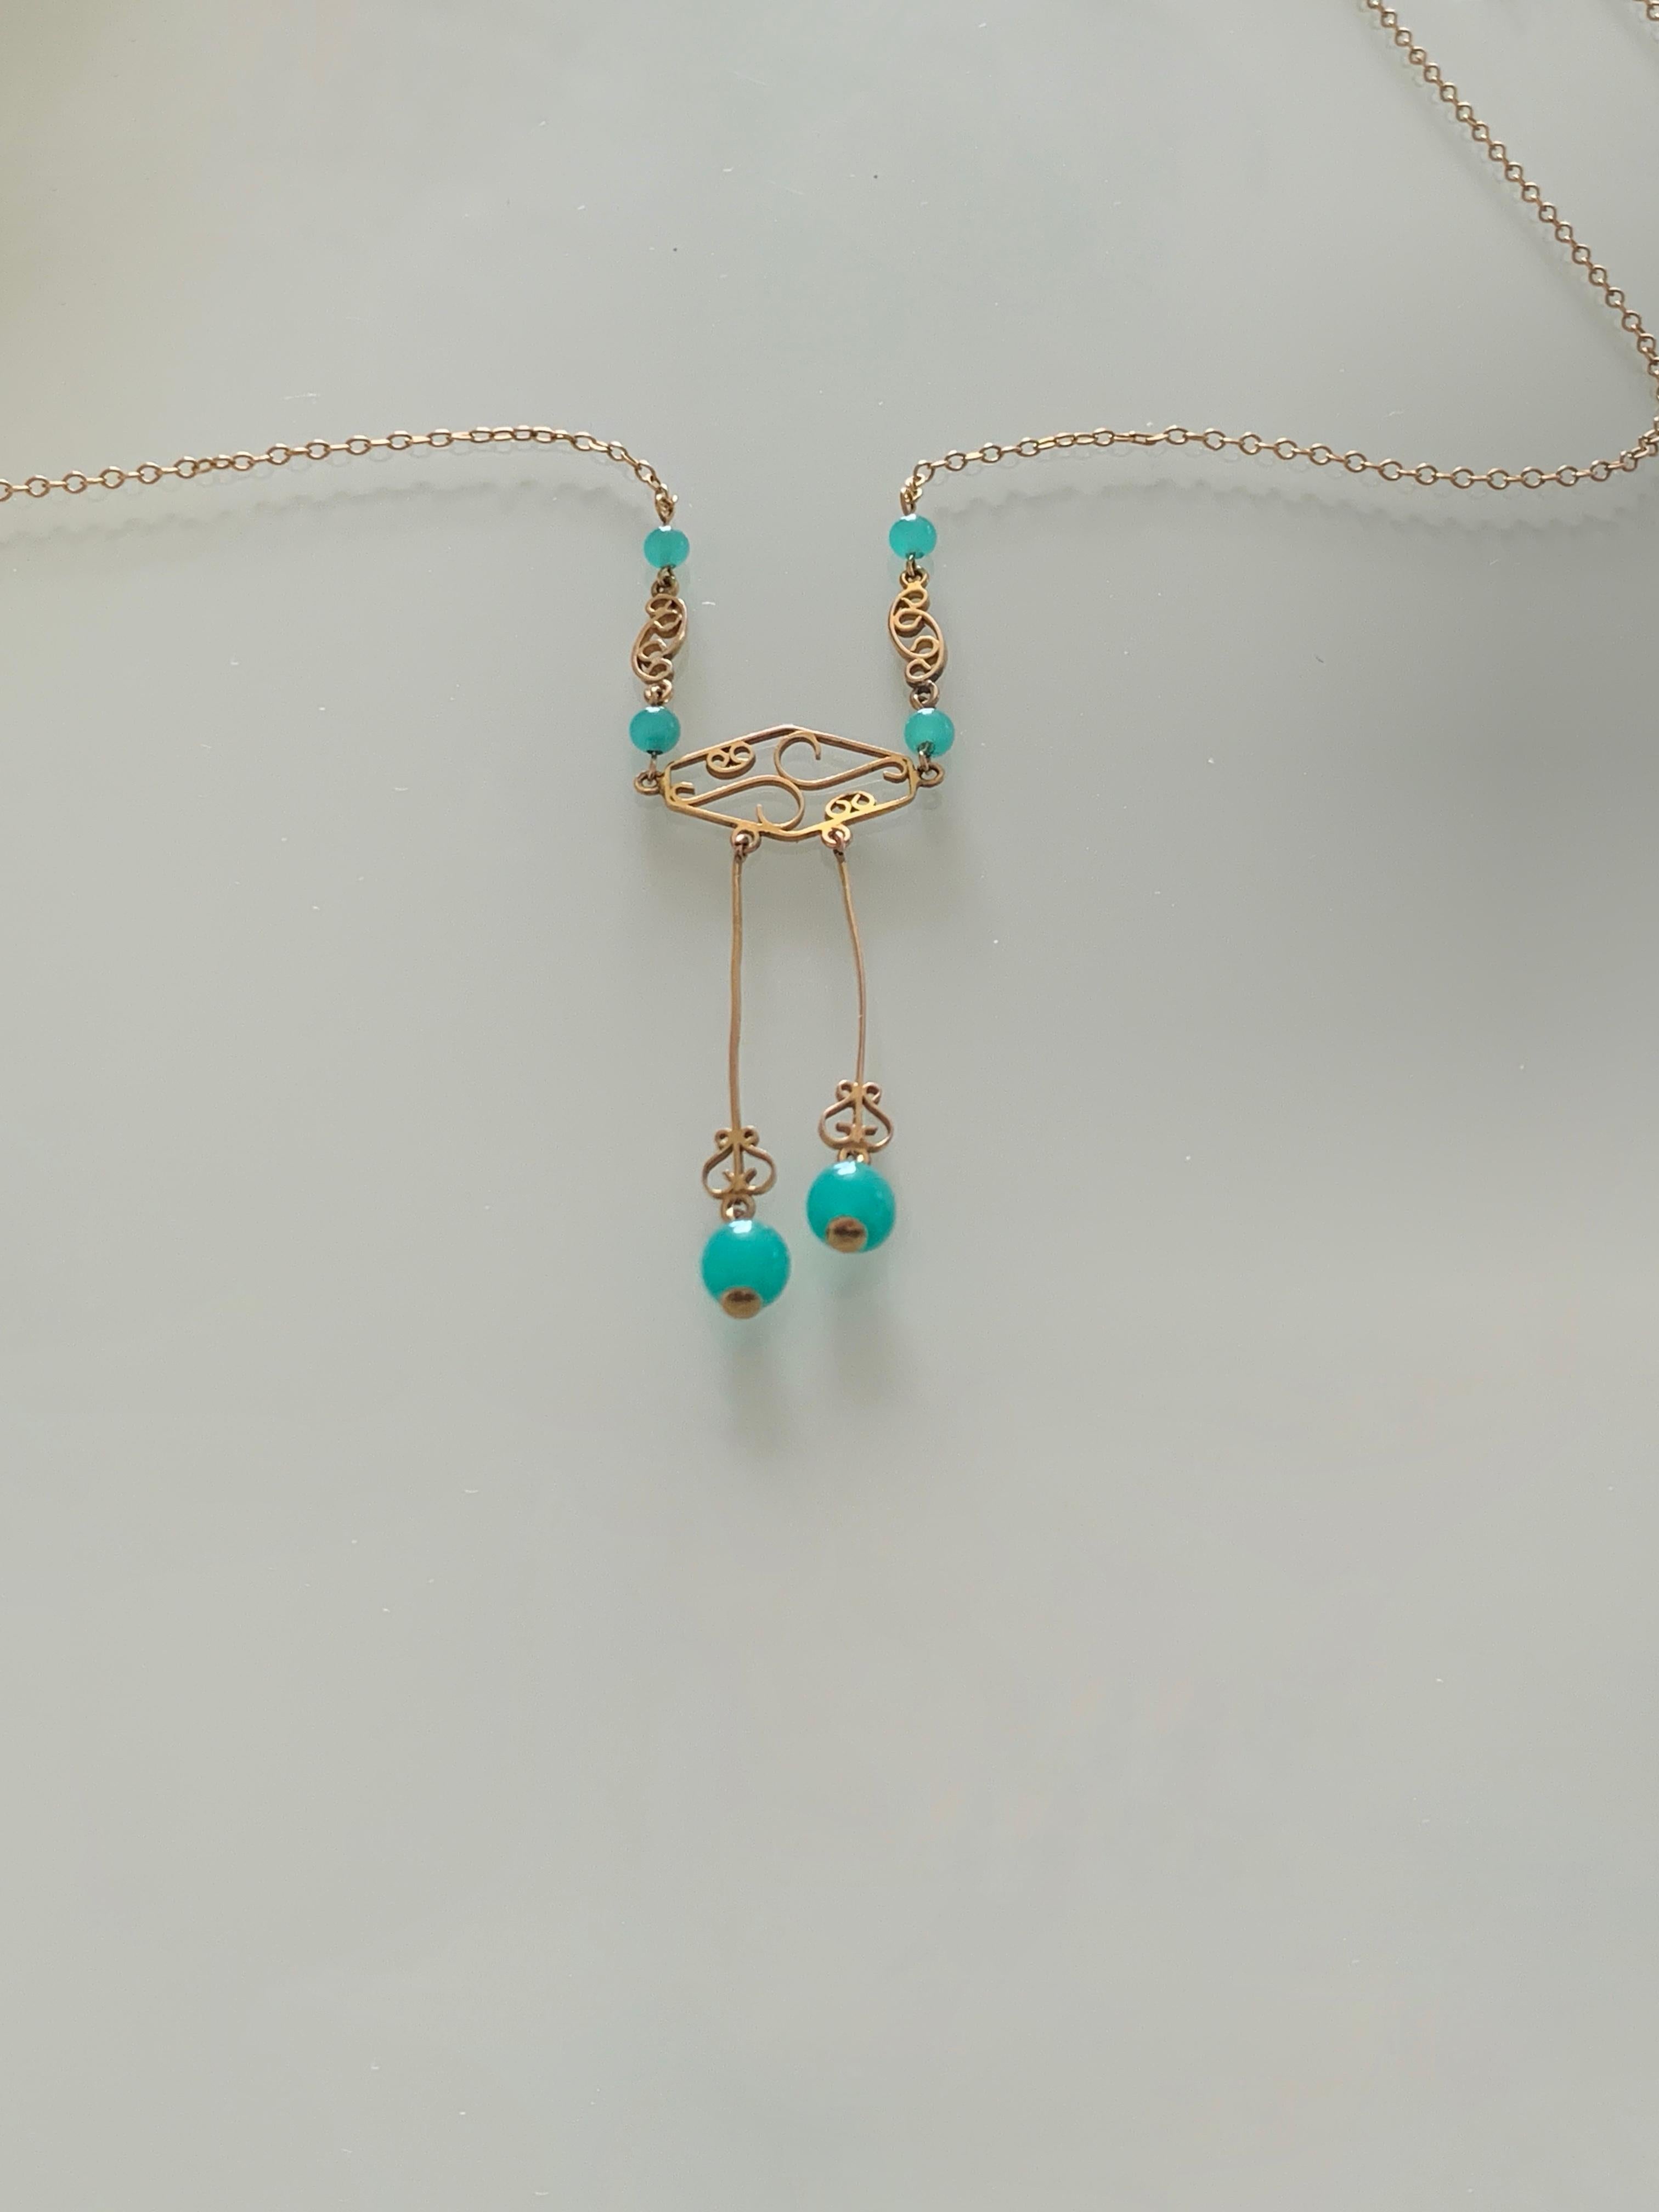 9ct Gold Türkis Jade Perlenkette
CIRCA 1930er Jahre
hat 9ct Stempel in der Nähe der Schließe
Gesamtgewicht 2,5 Gramm
Sehr schöne Halskette
Länge 16,35 Zoll.